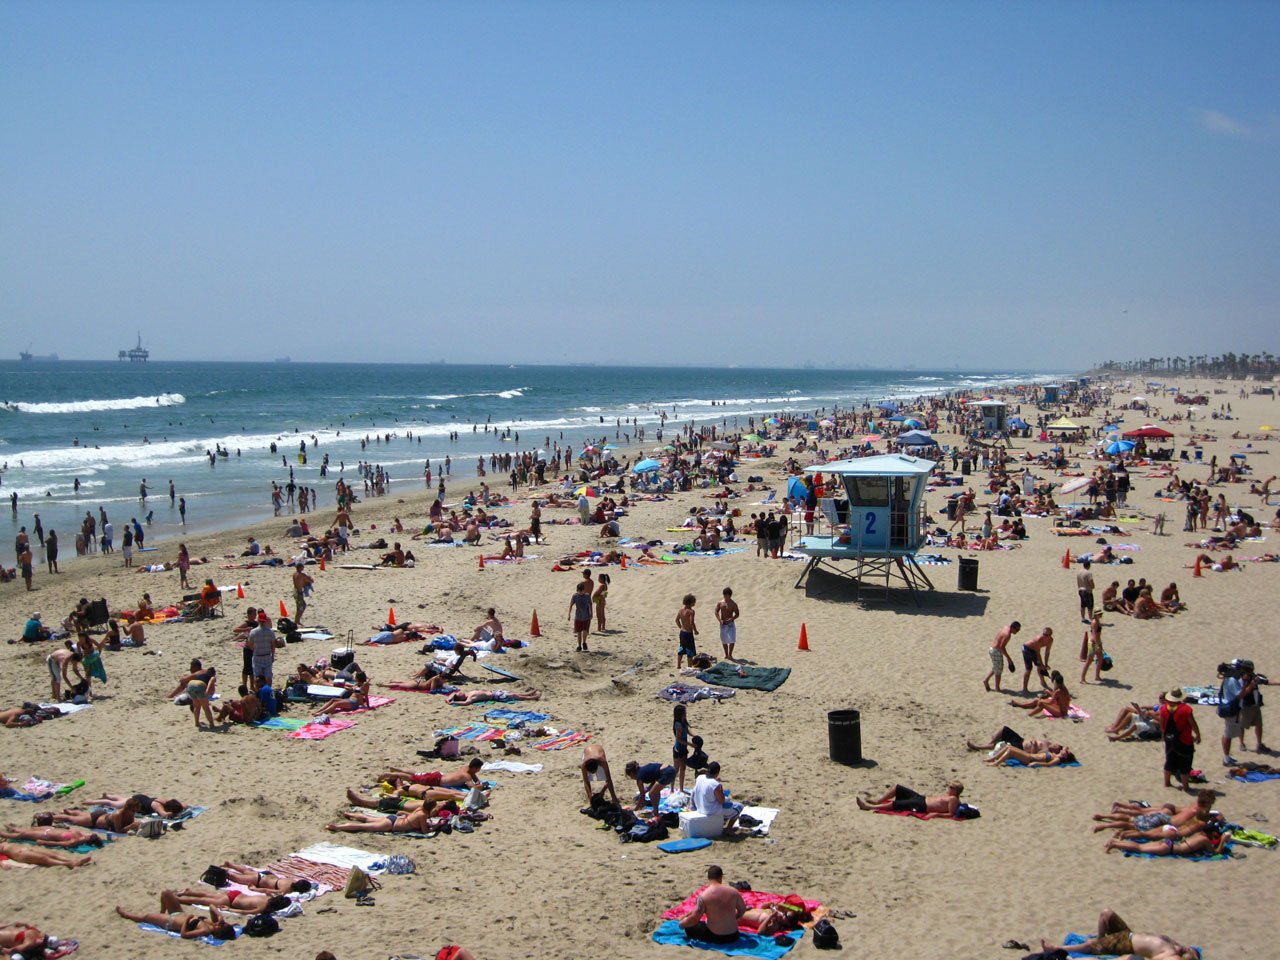 Busy beach at Huntington Beach